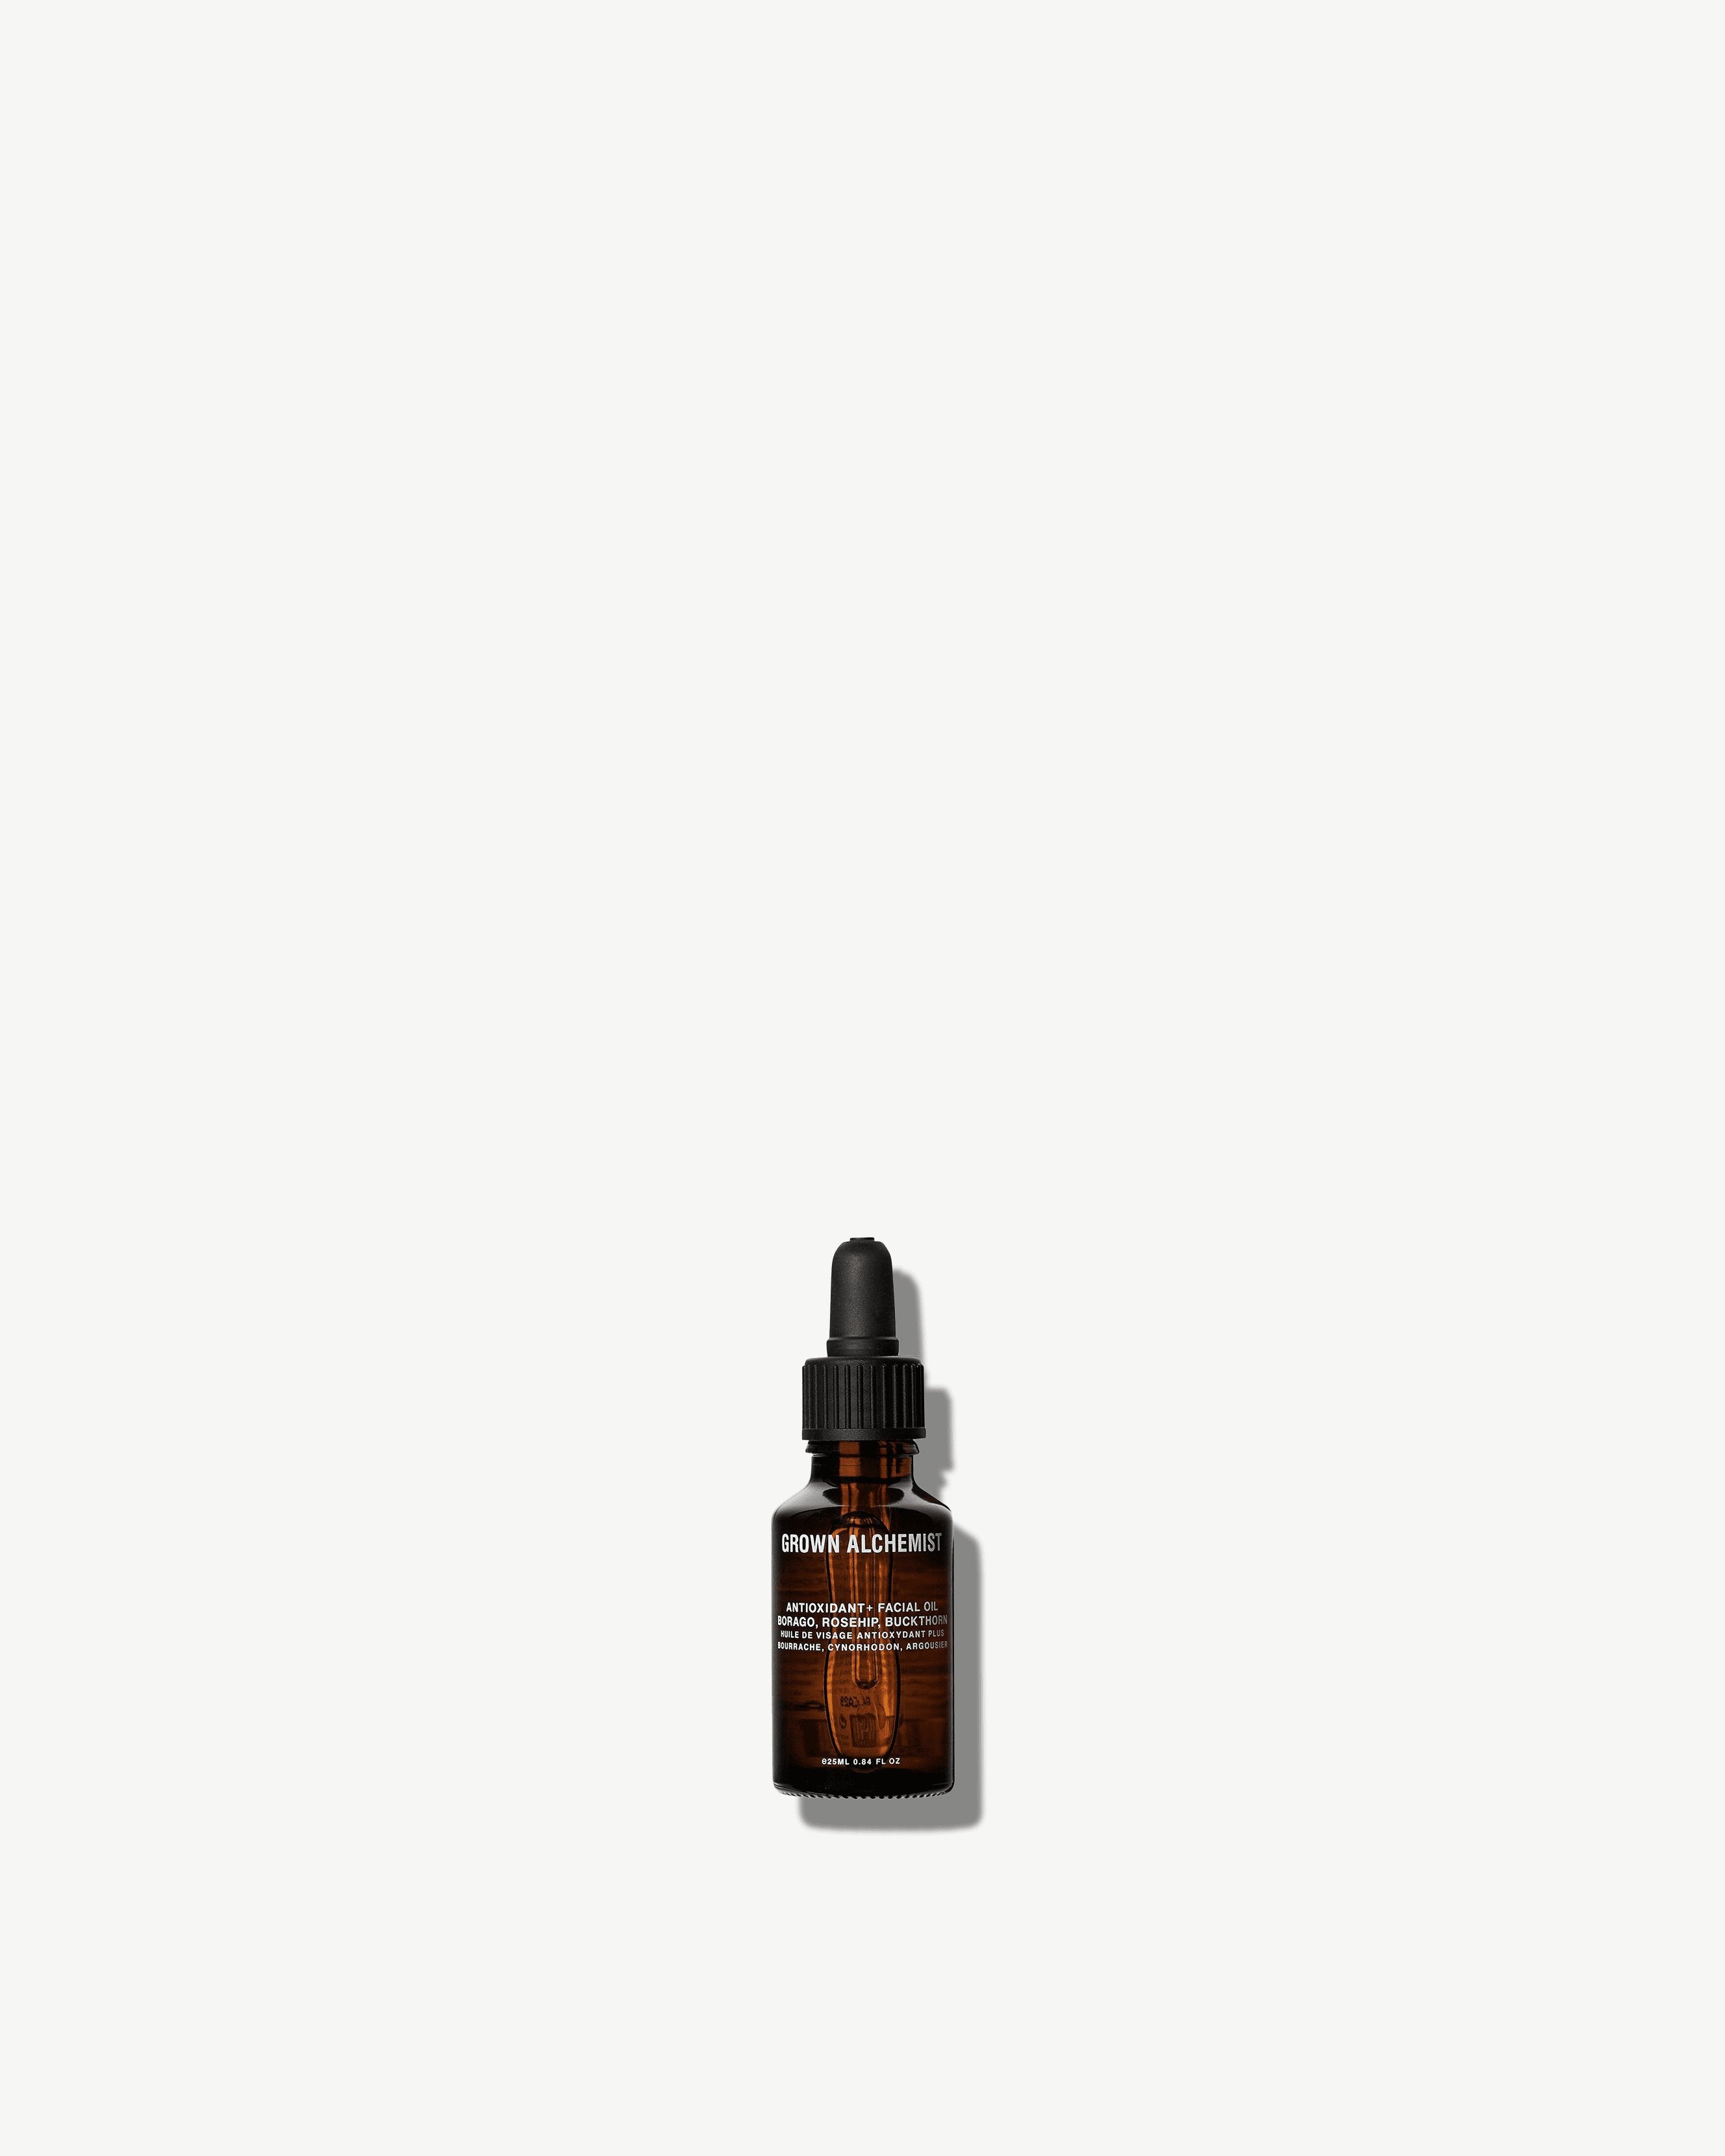 Die supergünstigen Neuerscheinungen dieser Woche Grown Alchemist Antioxidant + Clean, Facial Oil Credo Natural Oil - – Moisturizer